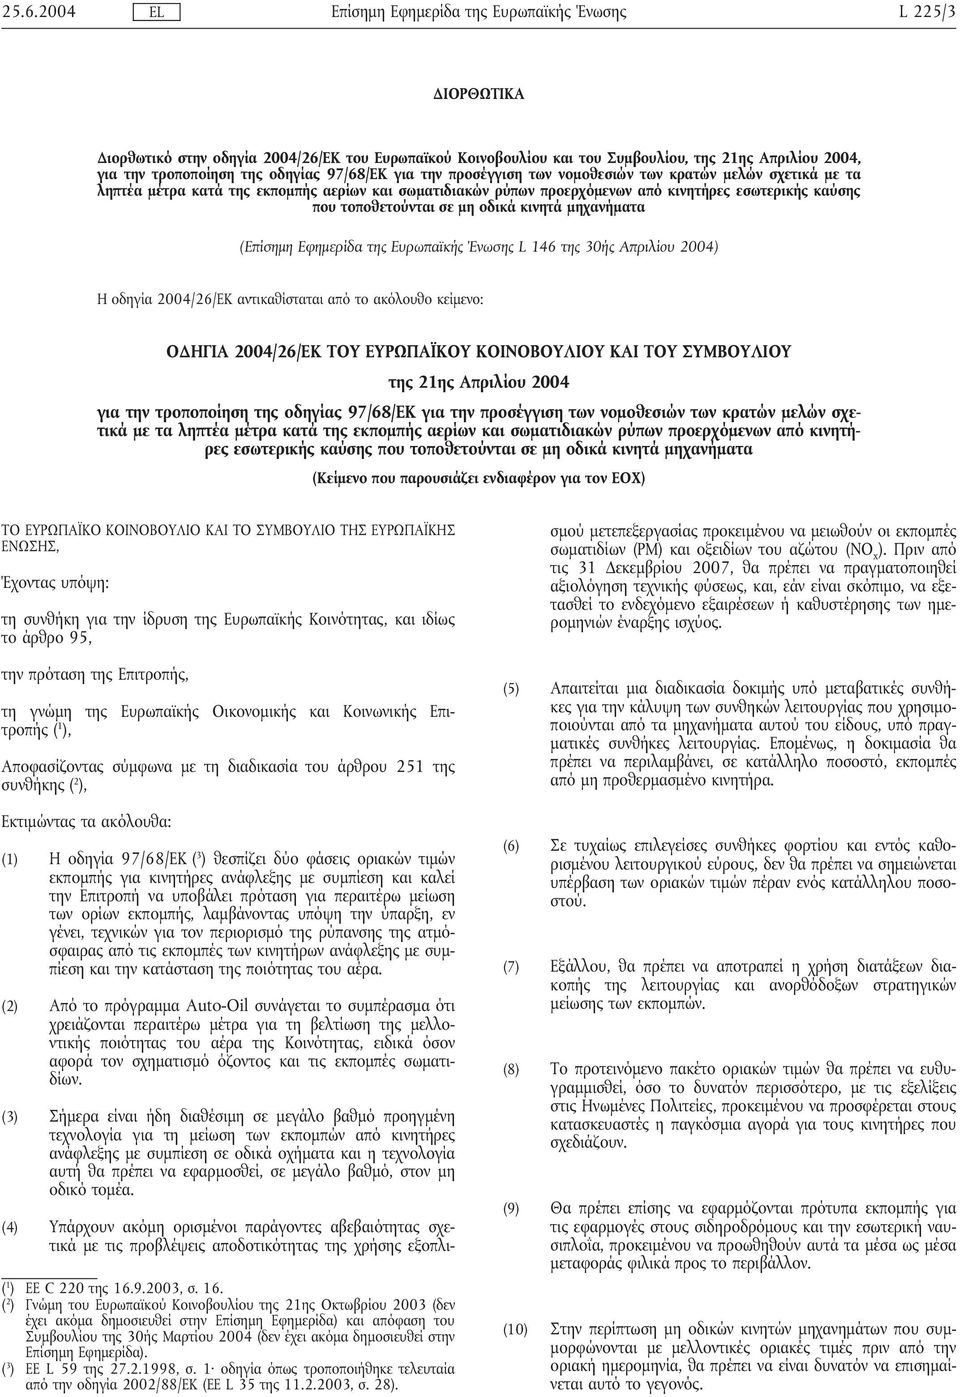 146 της 30ής Απριλίου 2004) Η οδηγία 2004/26/ΕΚ αντικαθίσταται από το ακόλουθο κείµενο: Ο ΗΓΙΑ 2004/26/ΕΚ ΤΟΥ ΕΥΡΩΠΑΪΚΟΥ ΚΟΙΝΟΒΟΥΛΙΟΥ ΚΑΙ ΤΟΥ ΣΥΜΒΟΥΛΙΟΥ της 21ης Απριλίου 2004 για την τροποποίηση της